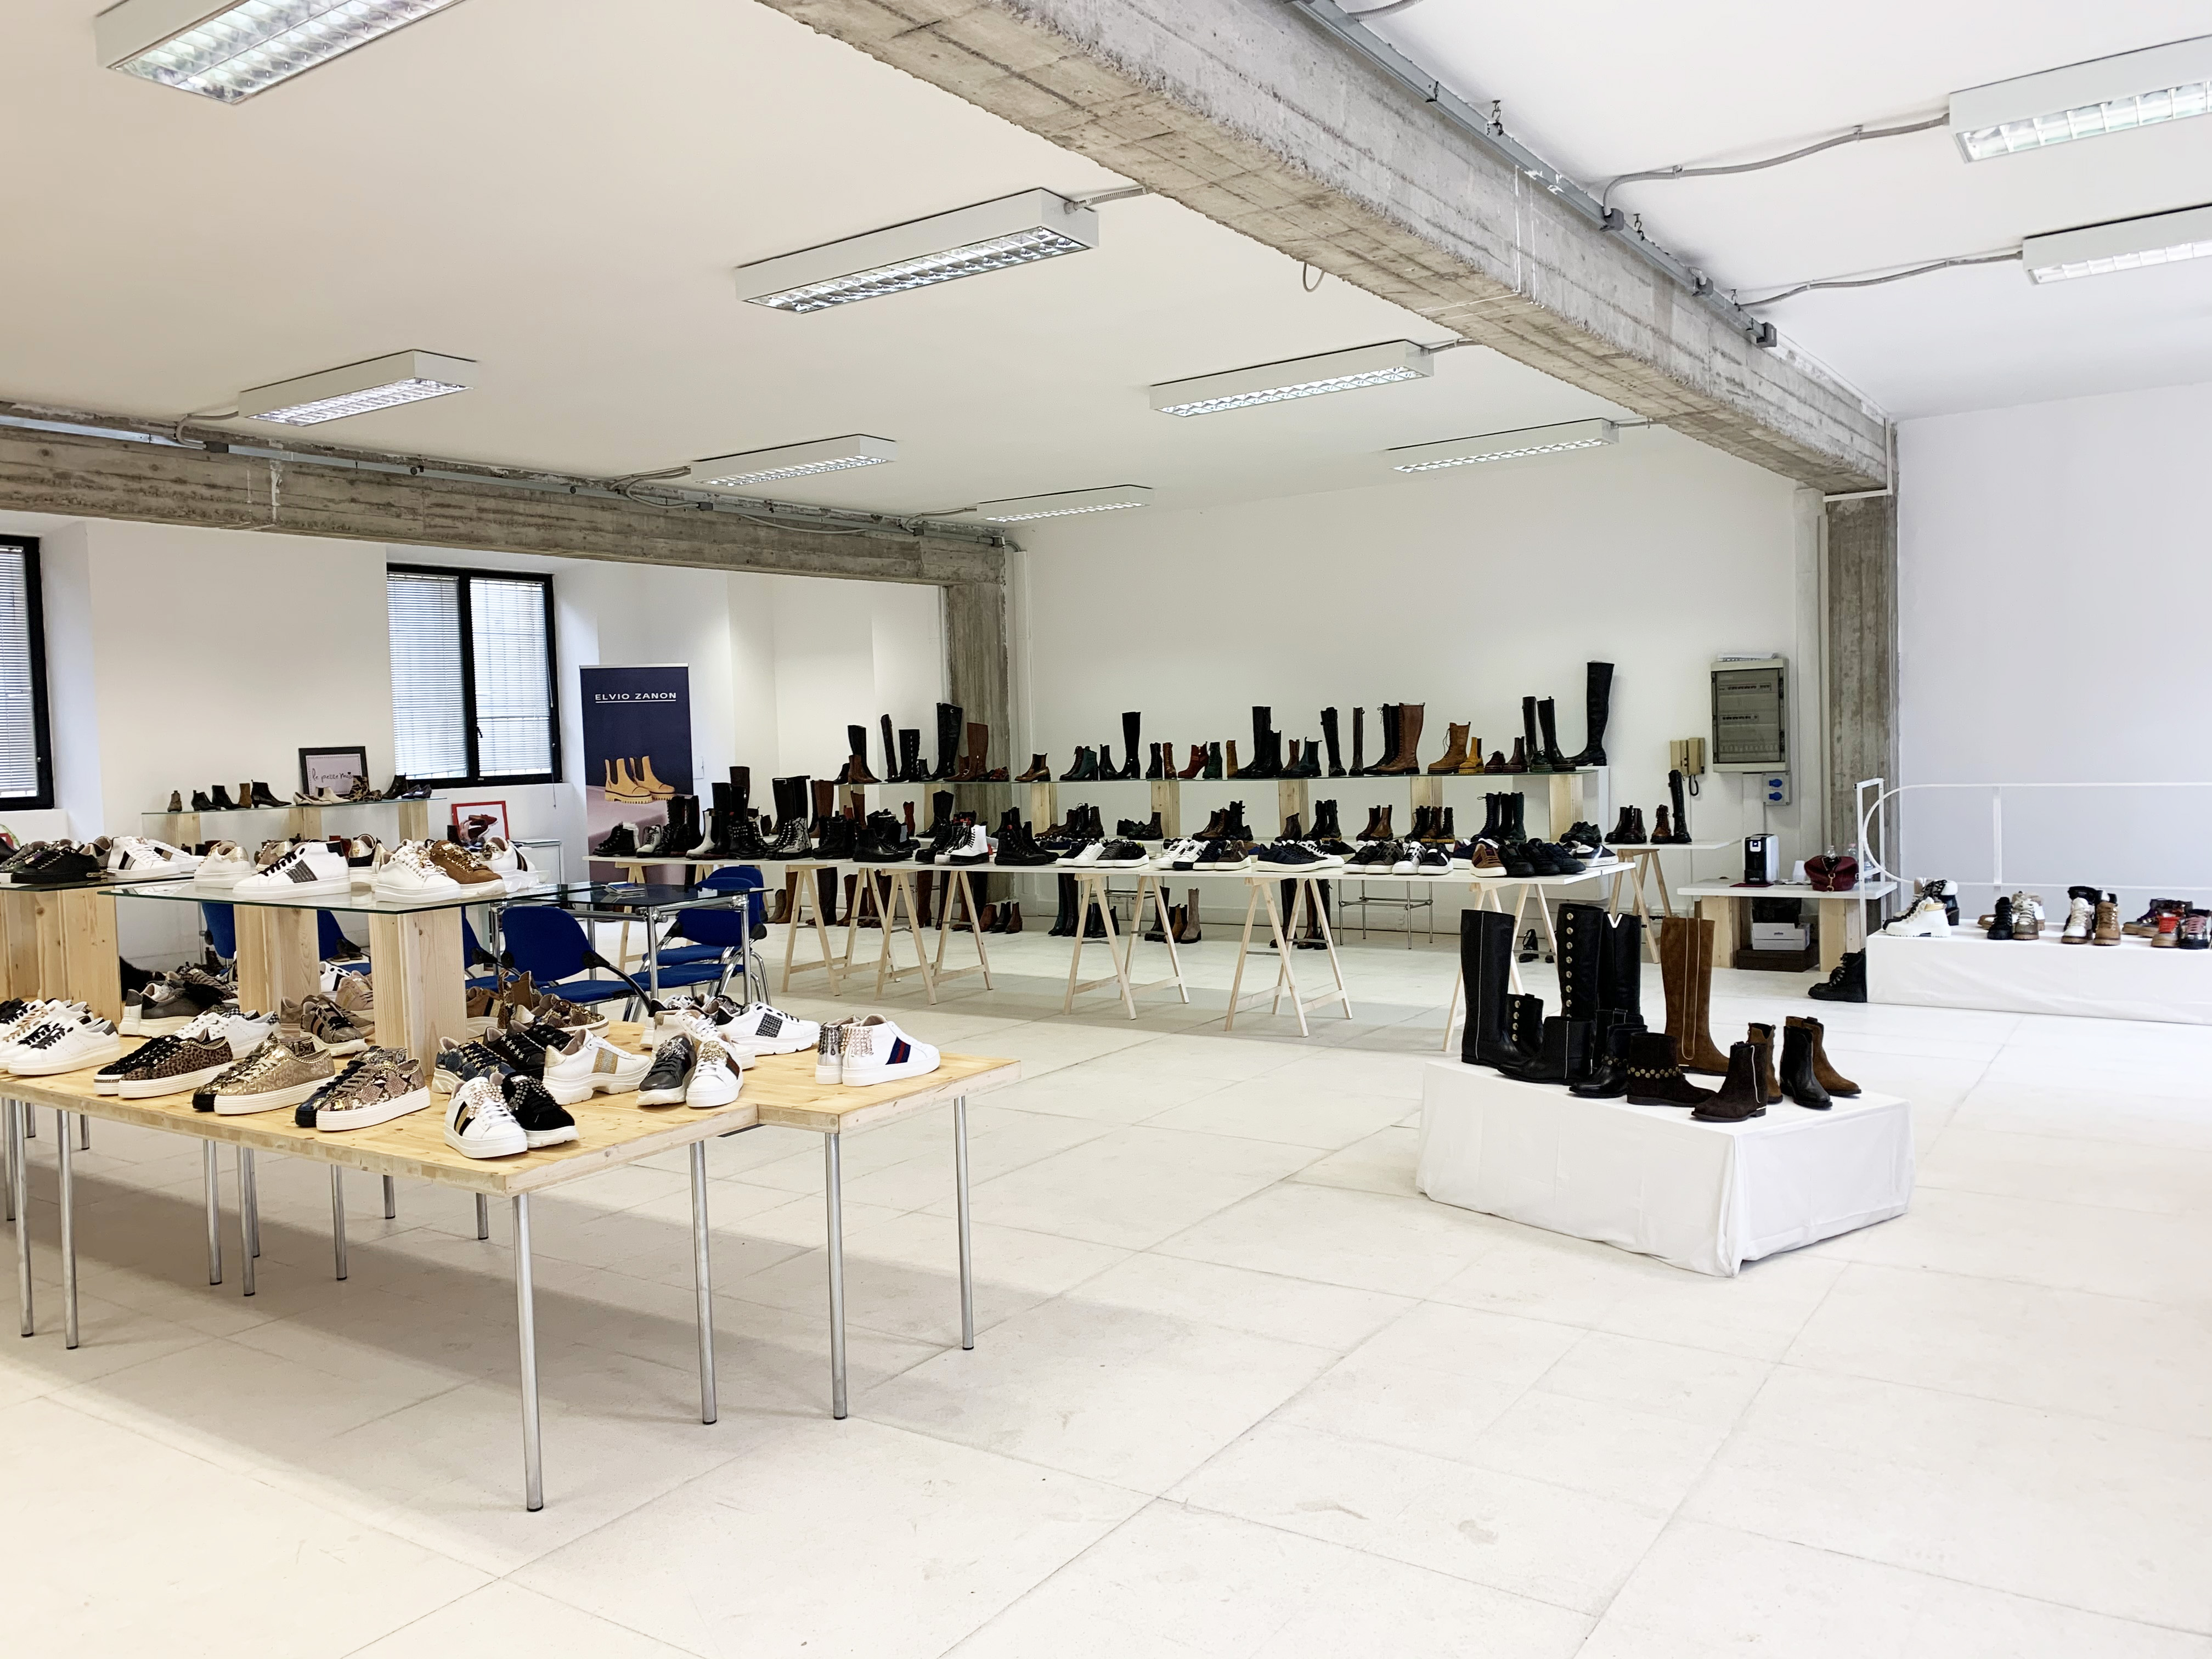 Caon Rappresentanze - temporary showroom in via Tortona 31 - 1